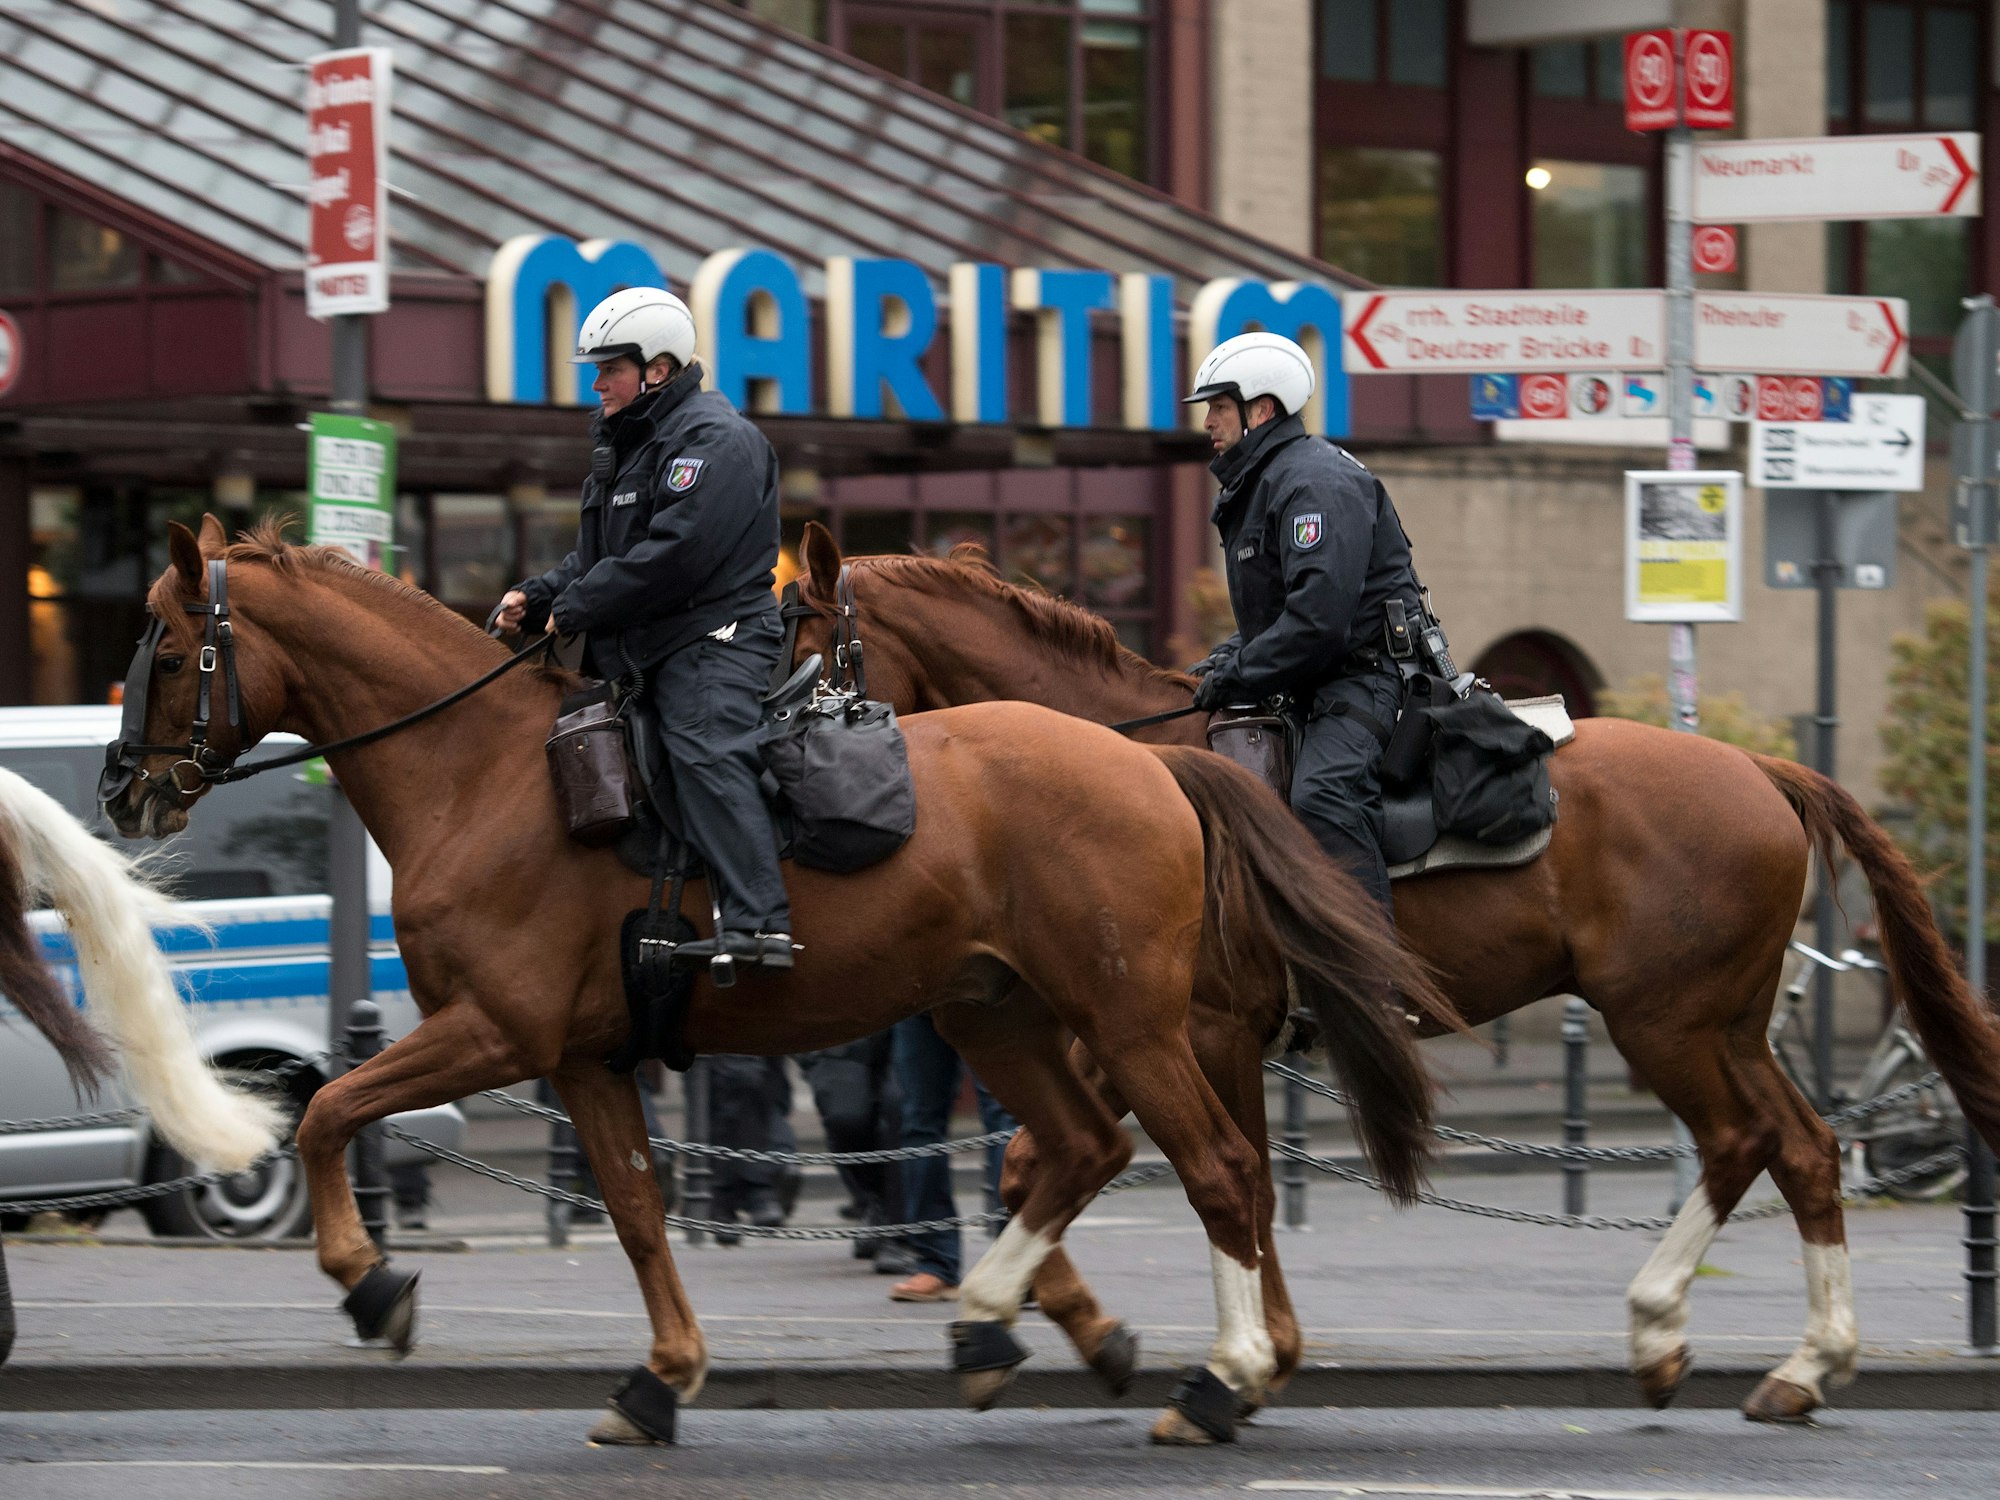 Polizisten der Reiterstaffel patrouillieren am 22.04.2017 vor dem Hotel Maritim in Köln vor Beginn des AfD-Bundesparteitags.